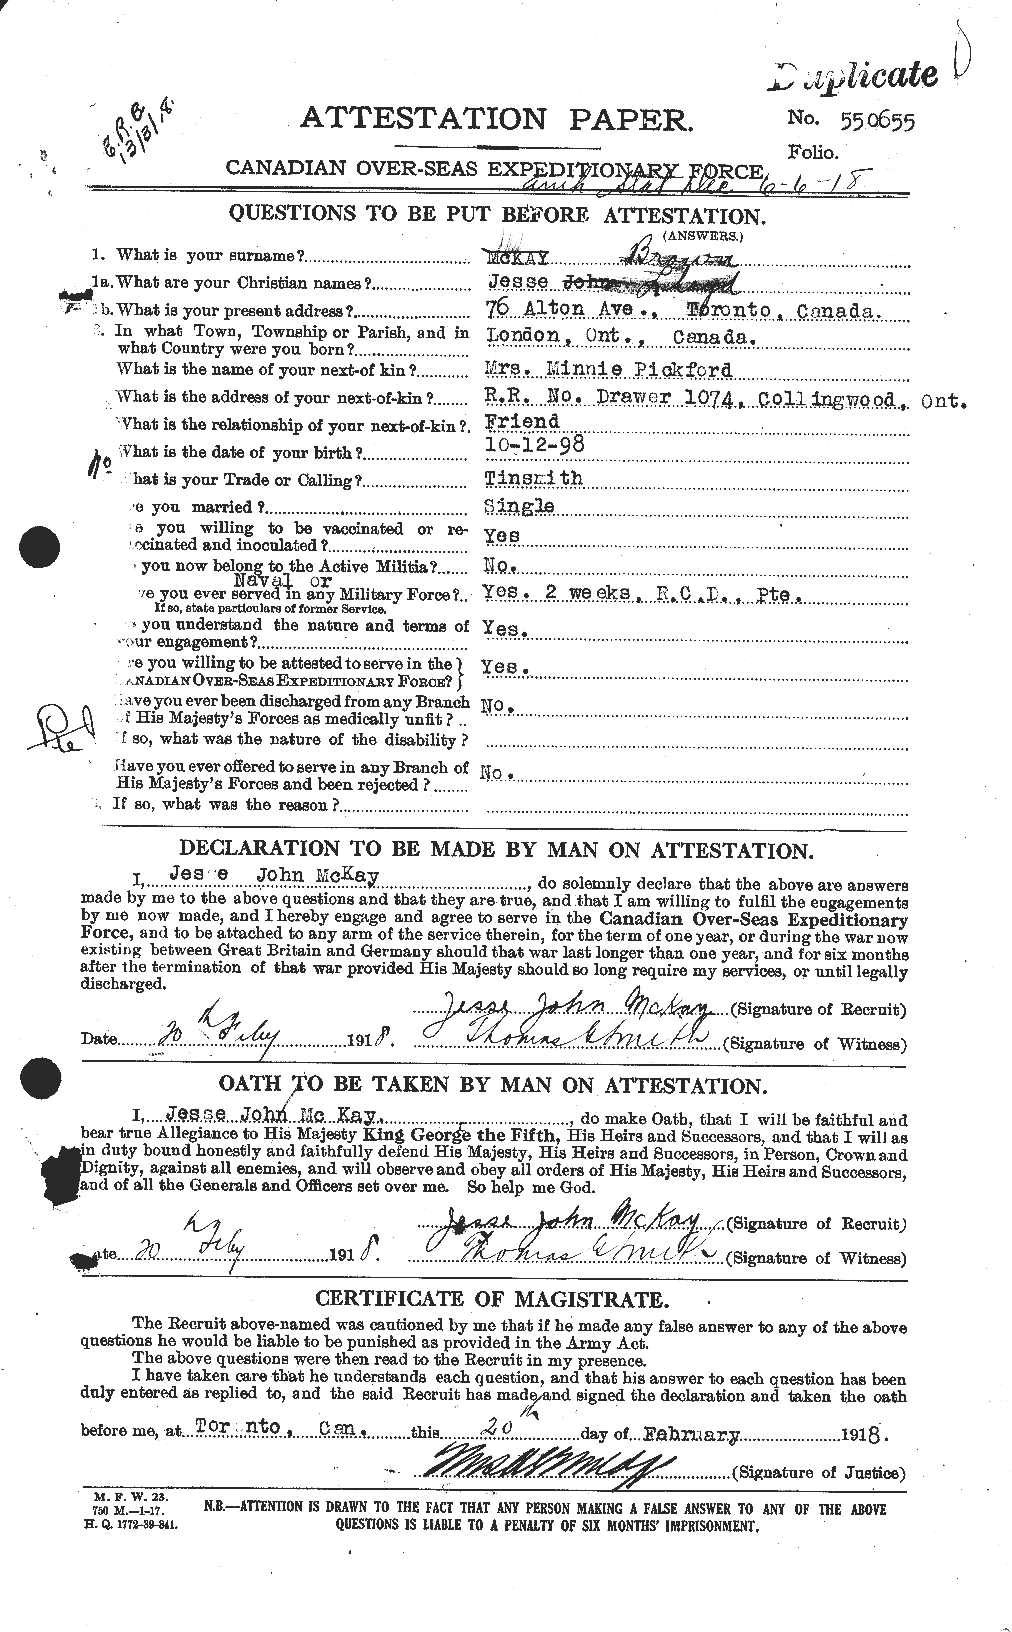 Dossiers du Personnel de la Première Guerre mondiale - CEC 269617a